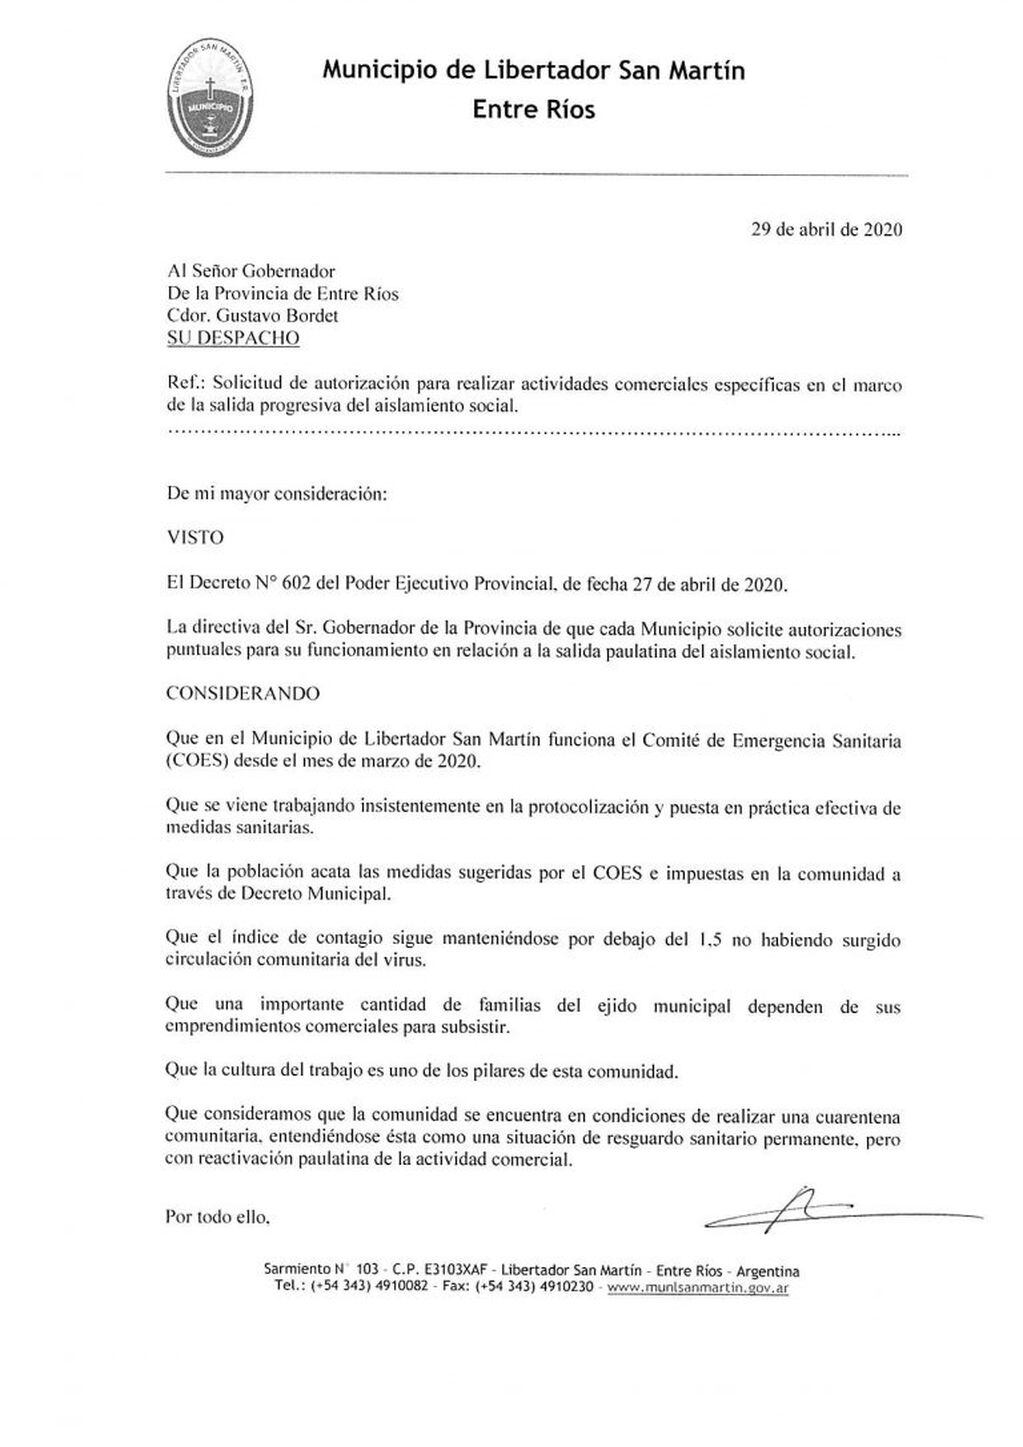 Nota del Intendente de Libertador San Martín enviada al Gobernador Bordet.